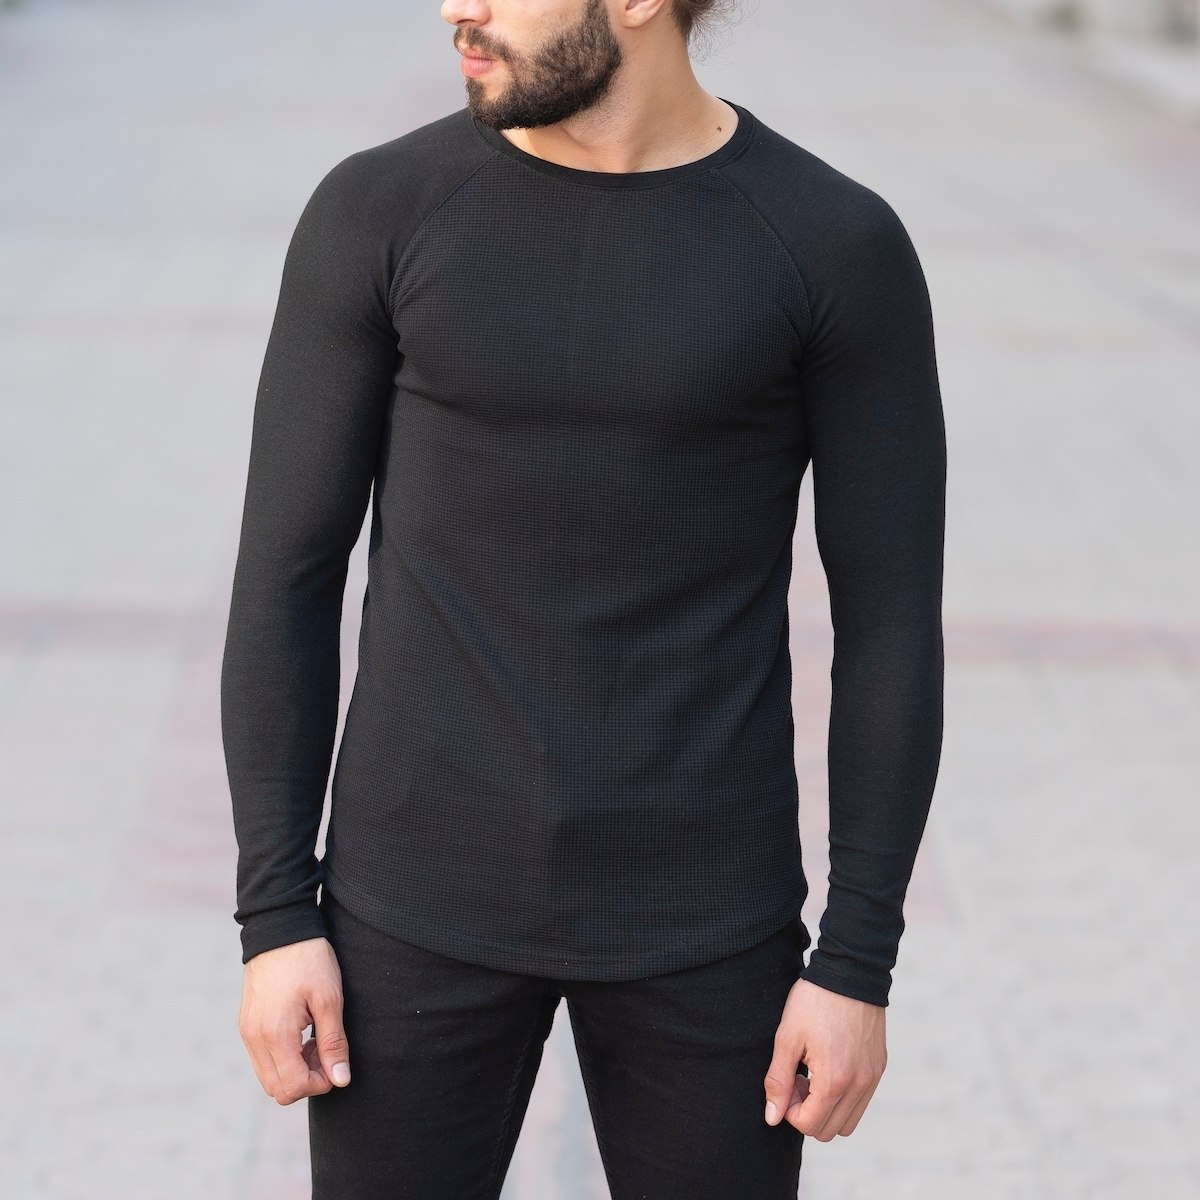 Herren Slim-Fit Sweatshirt in schwarz - 1